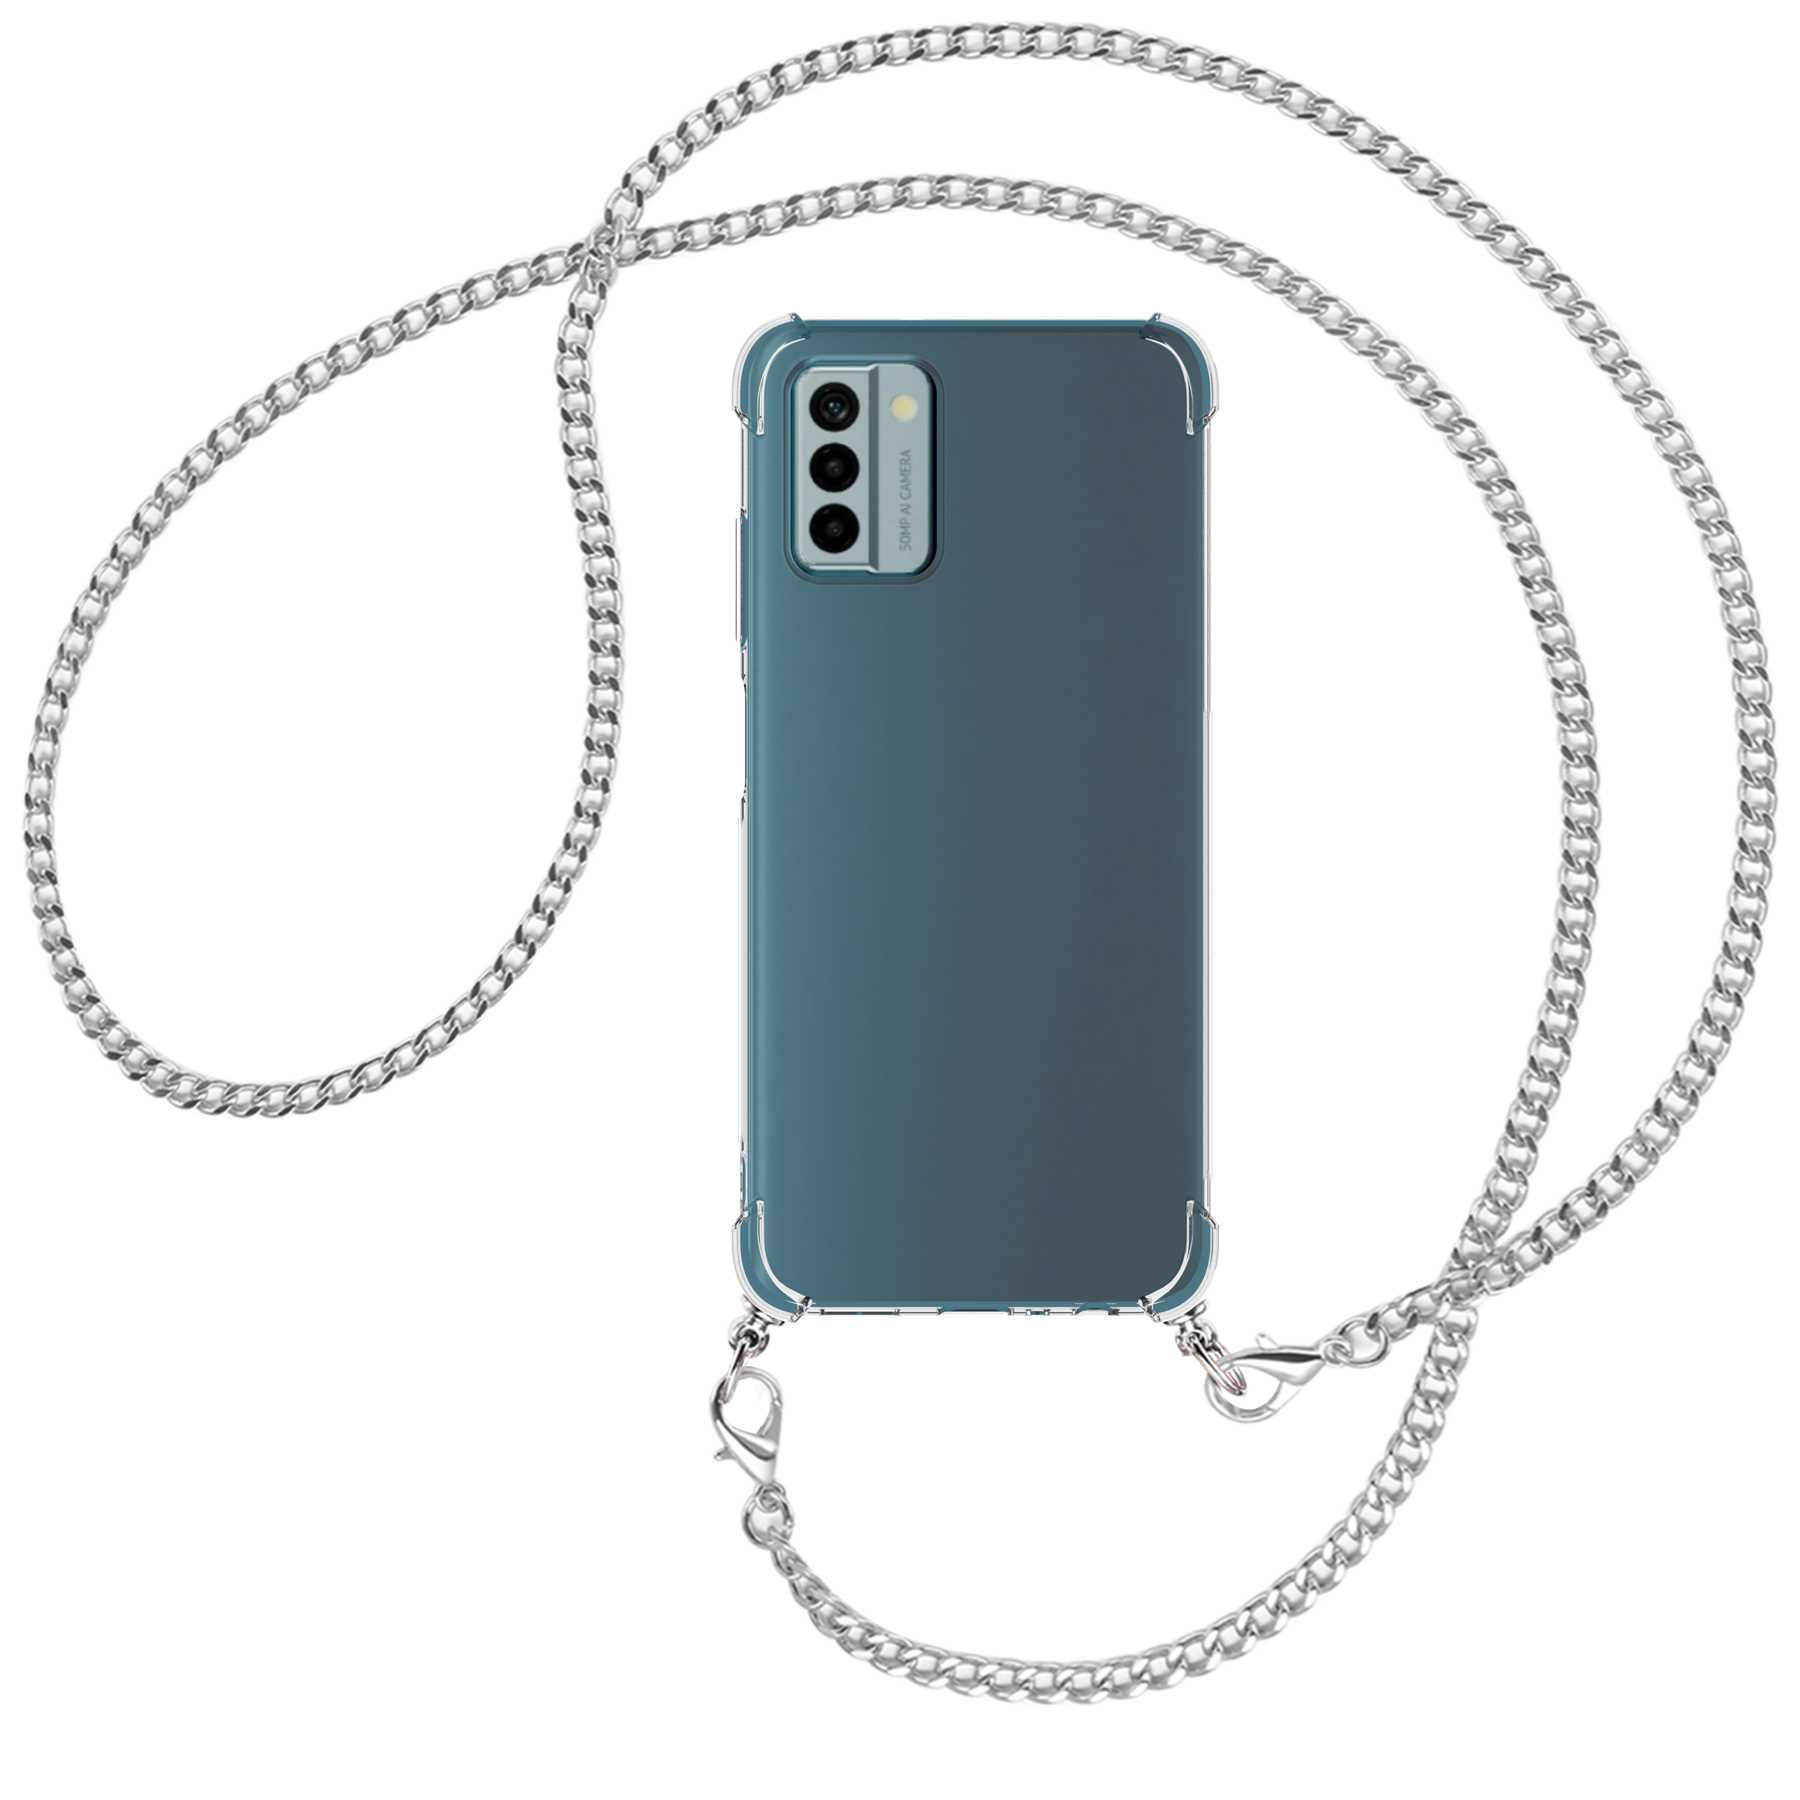 MTB MORE ENERGY Umhänge-Hülle G22, Nokia, Metallkette, Kette (silber) mit Backcover